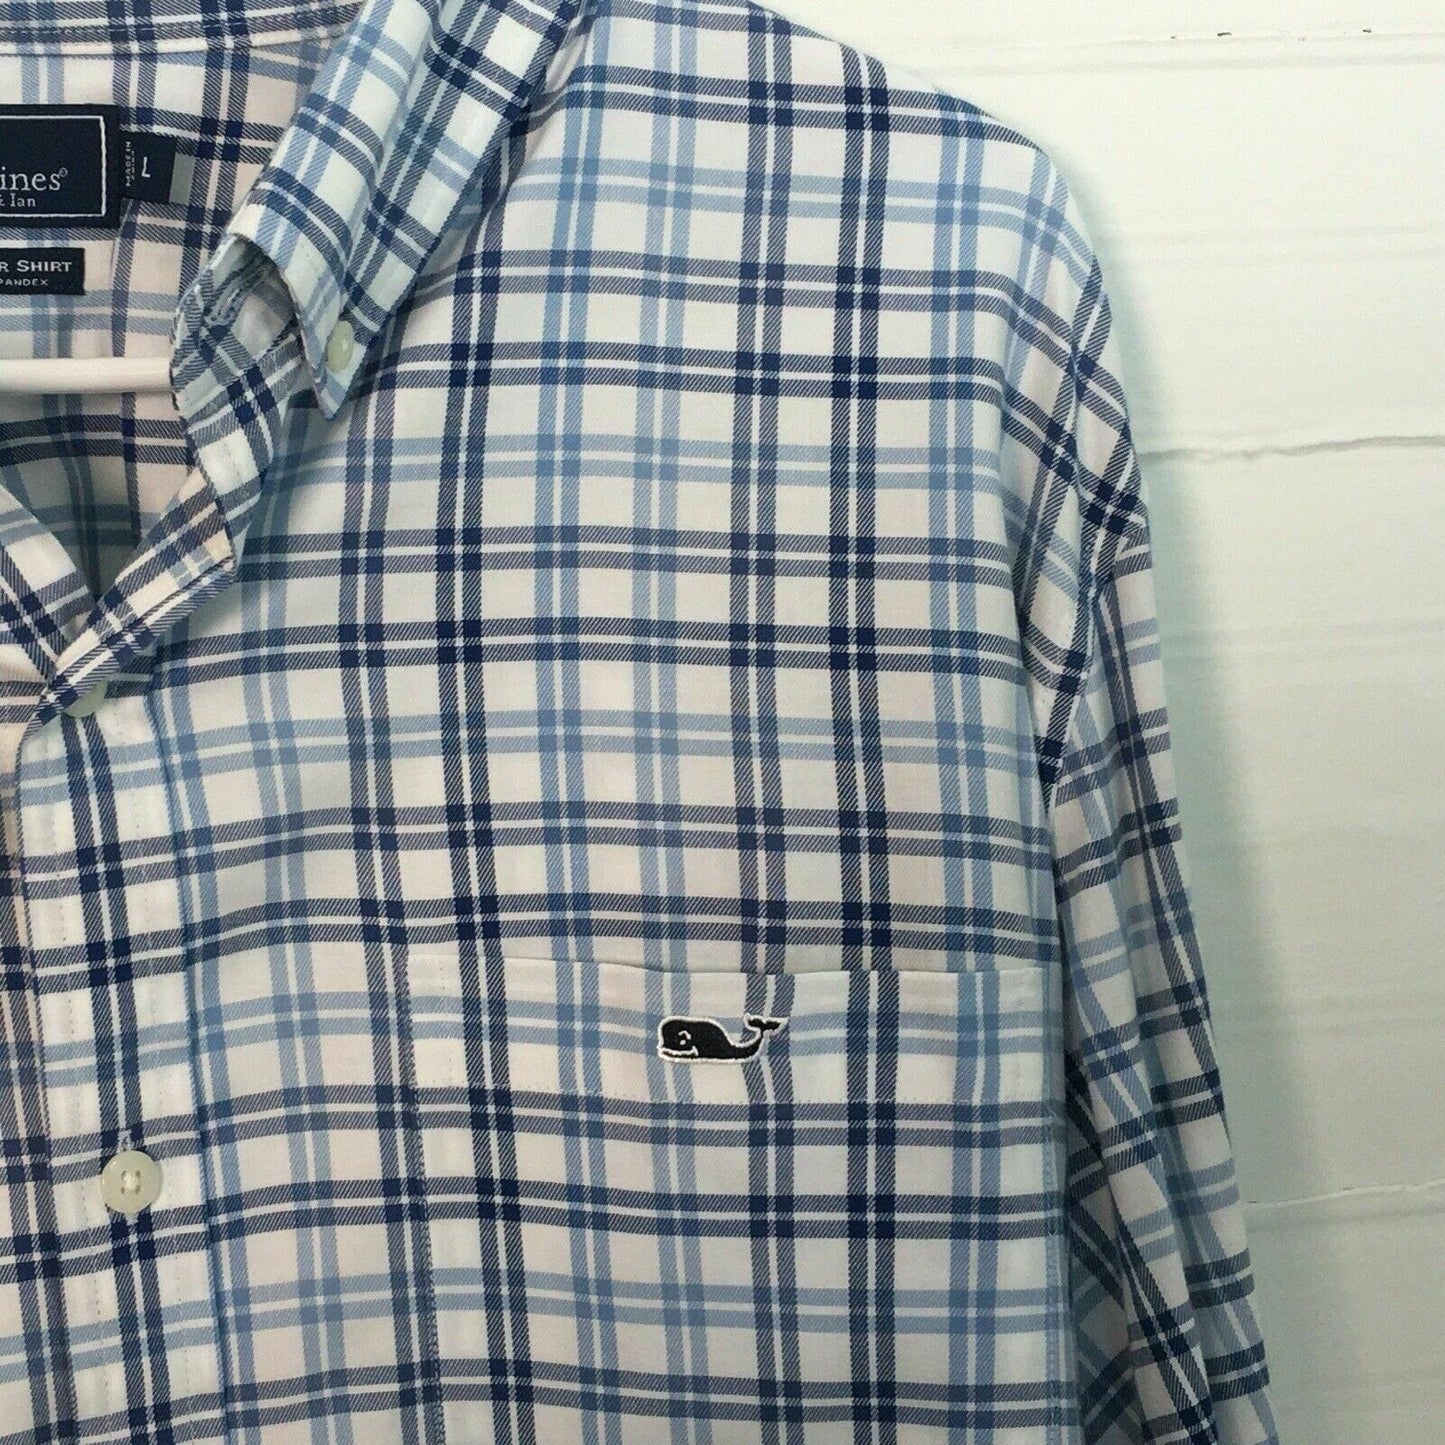 Sophisticated Vineyard Vines Men's Slim Fit Button Down Tucker Shirt - Blue White Plaid - Size L